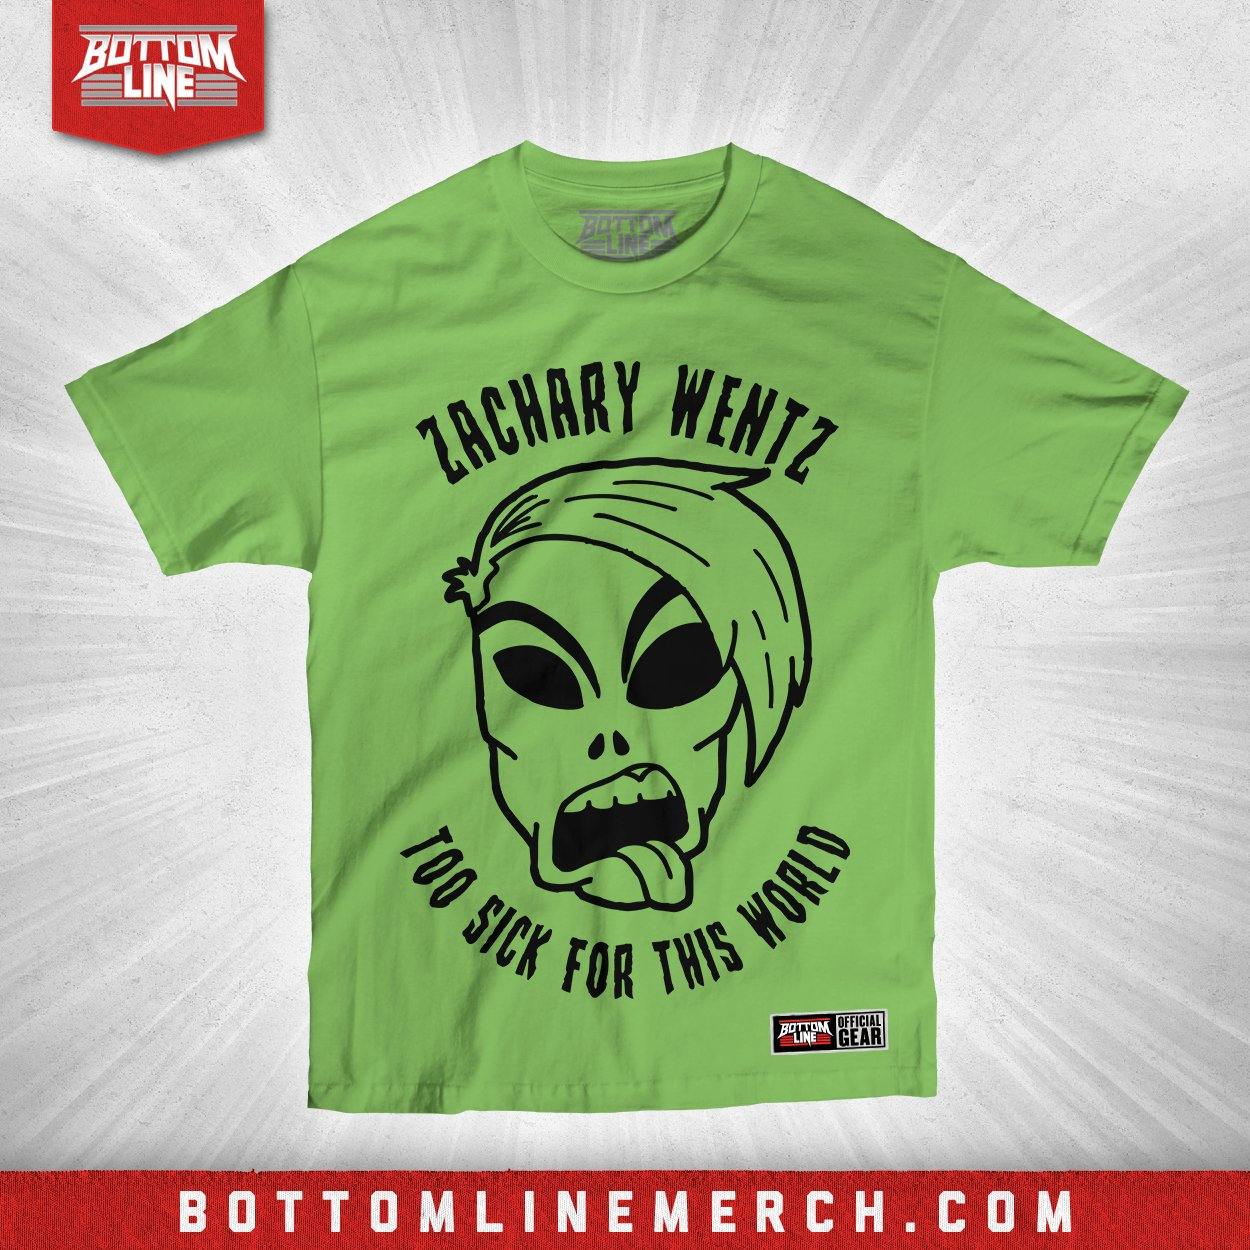 Buy Now – Zachary Wentz "Alien Head" Shirt – Wrestler & Wrestling Merch – Bottom Line